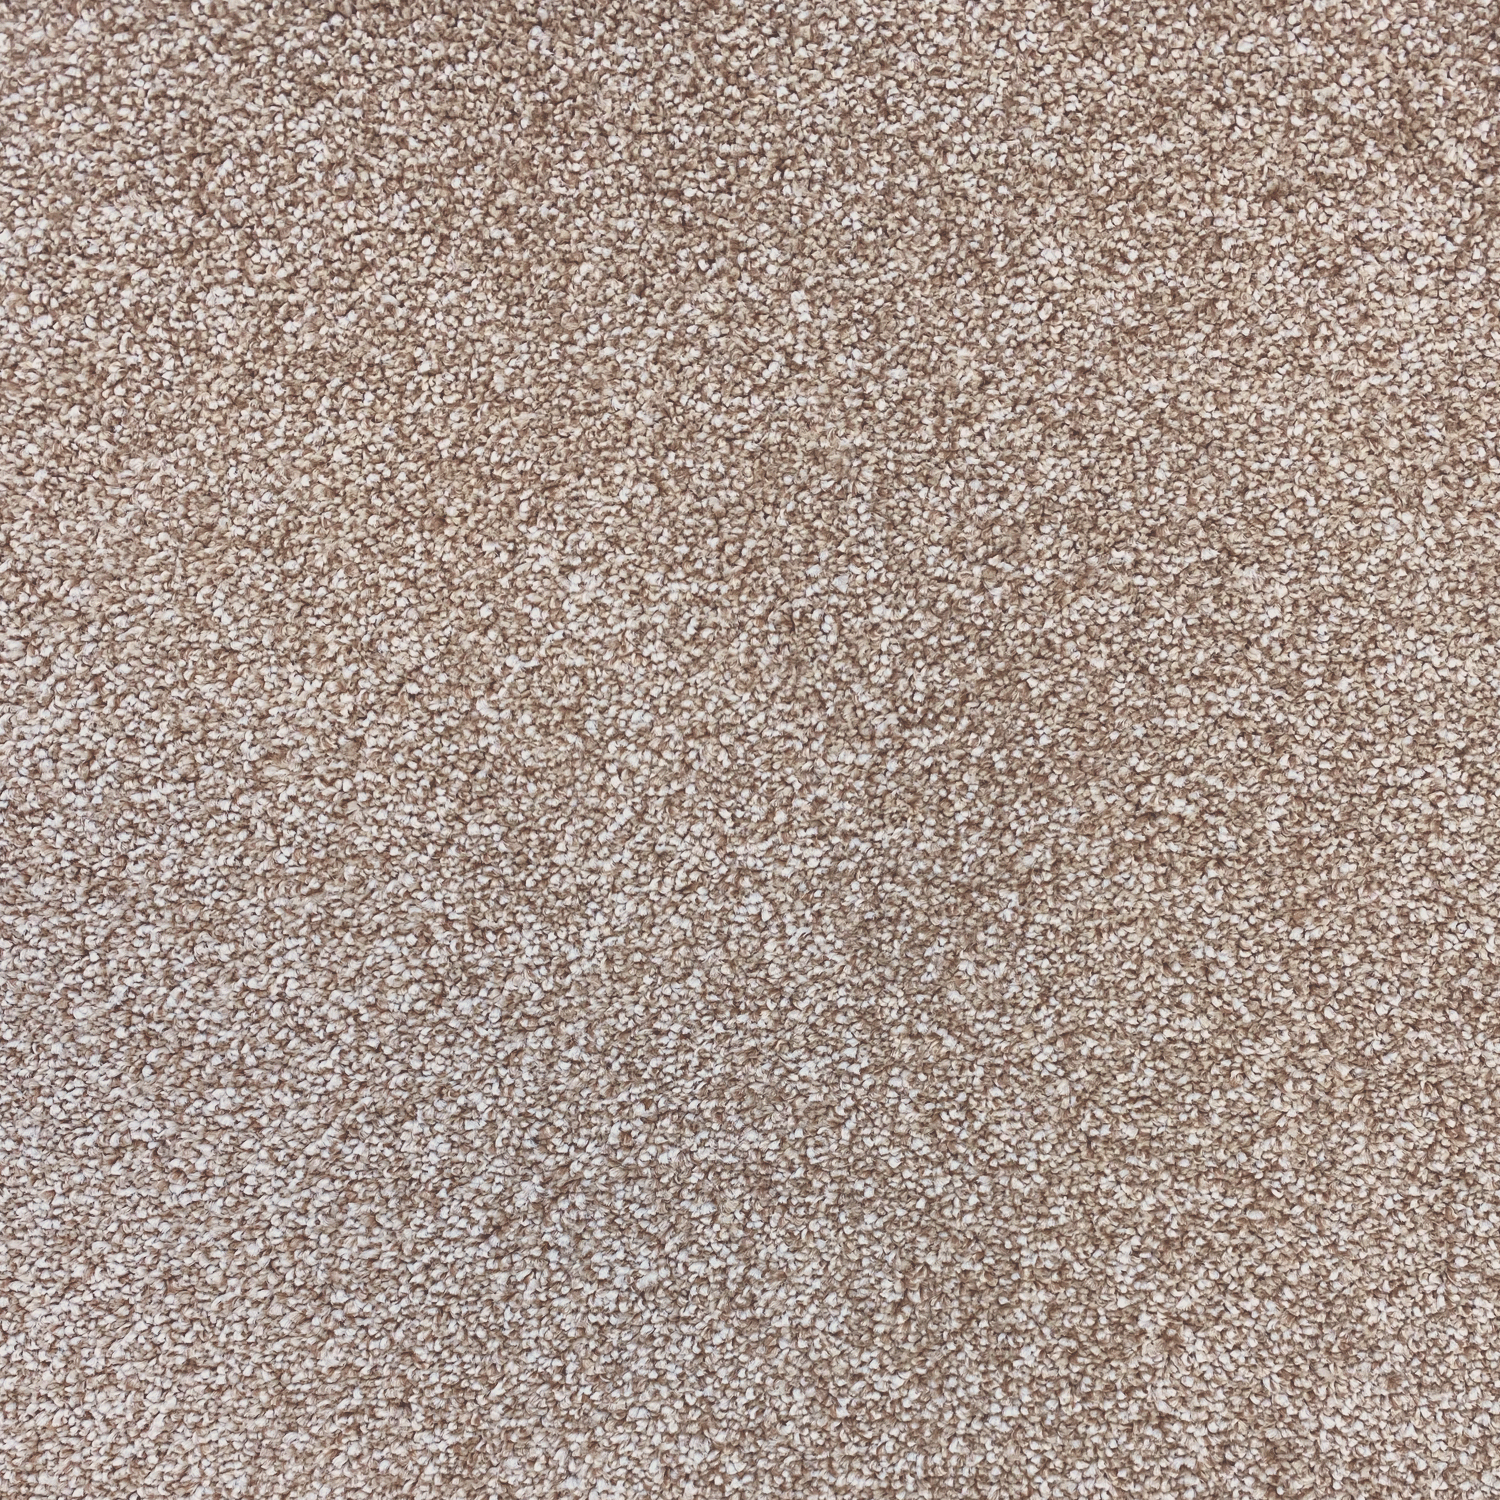 Carpet name: Smart Textures Fawn